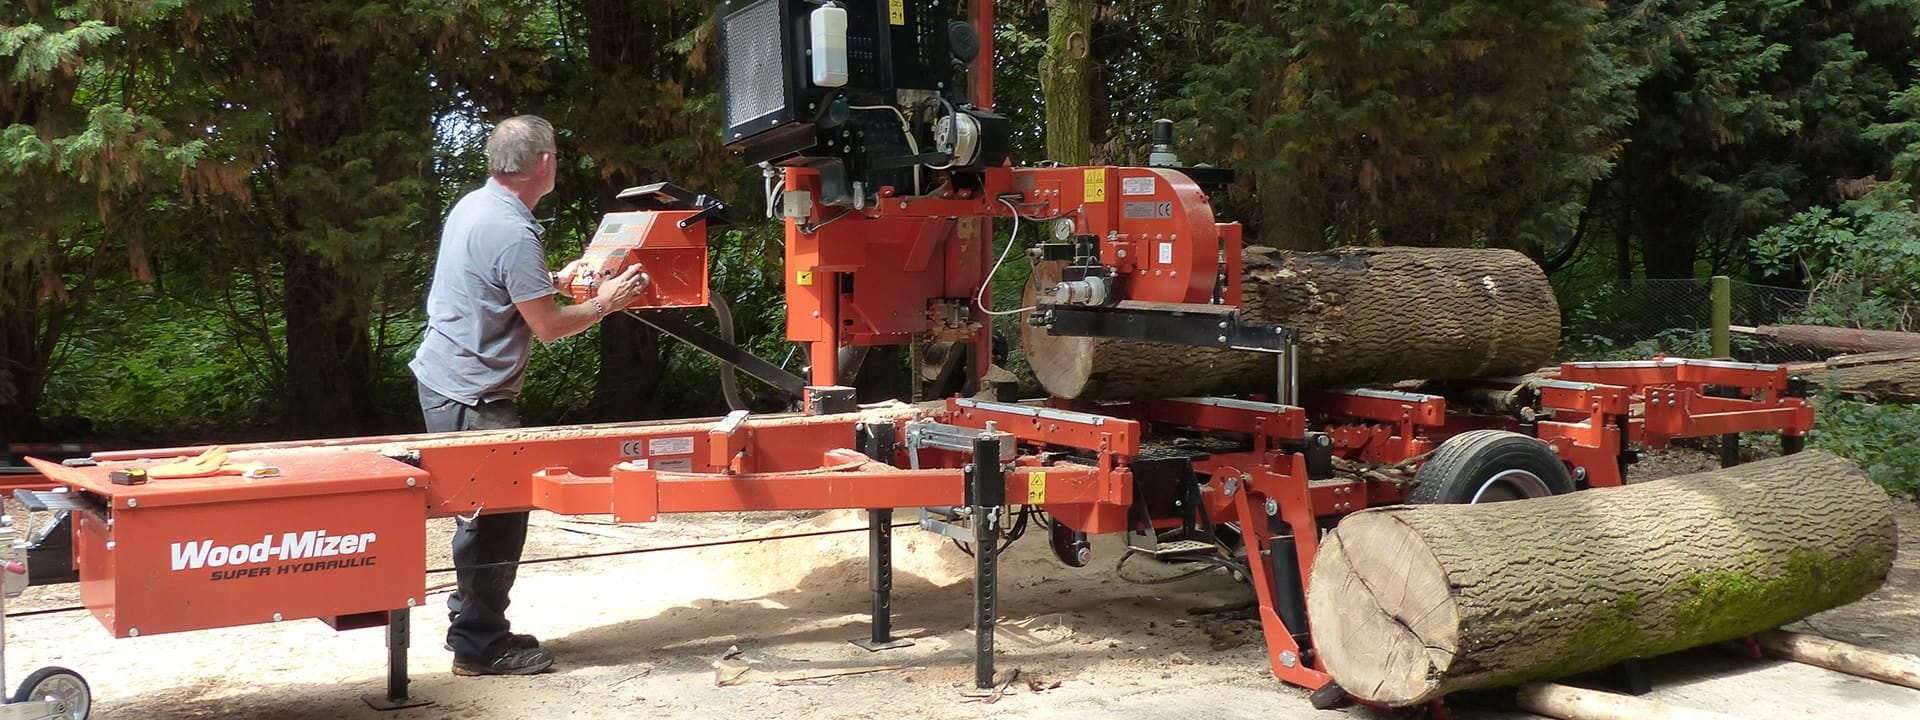 Wood-Mizer LT40 sawmill cuts logs for local charity